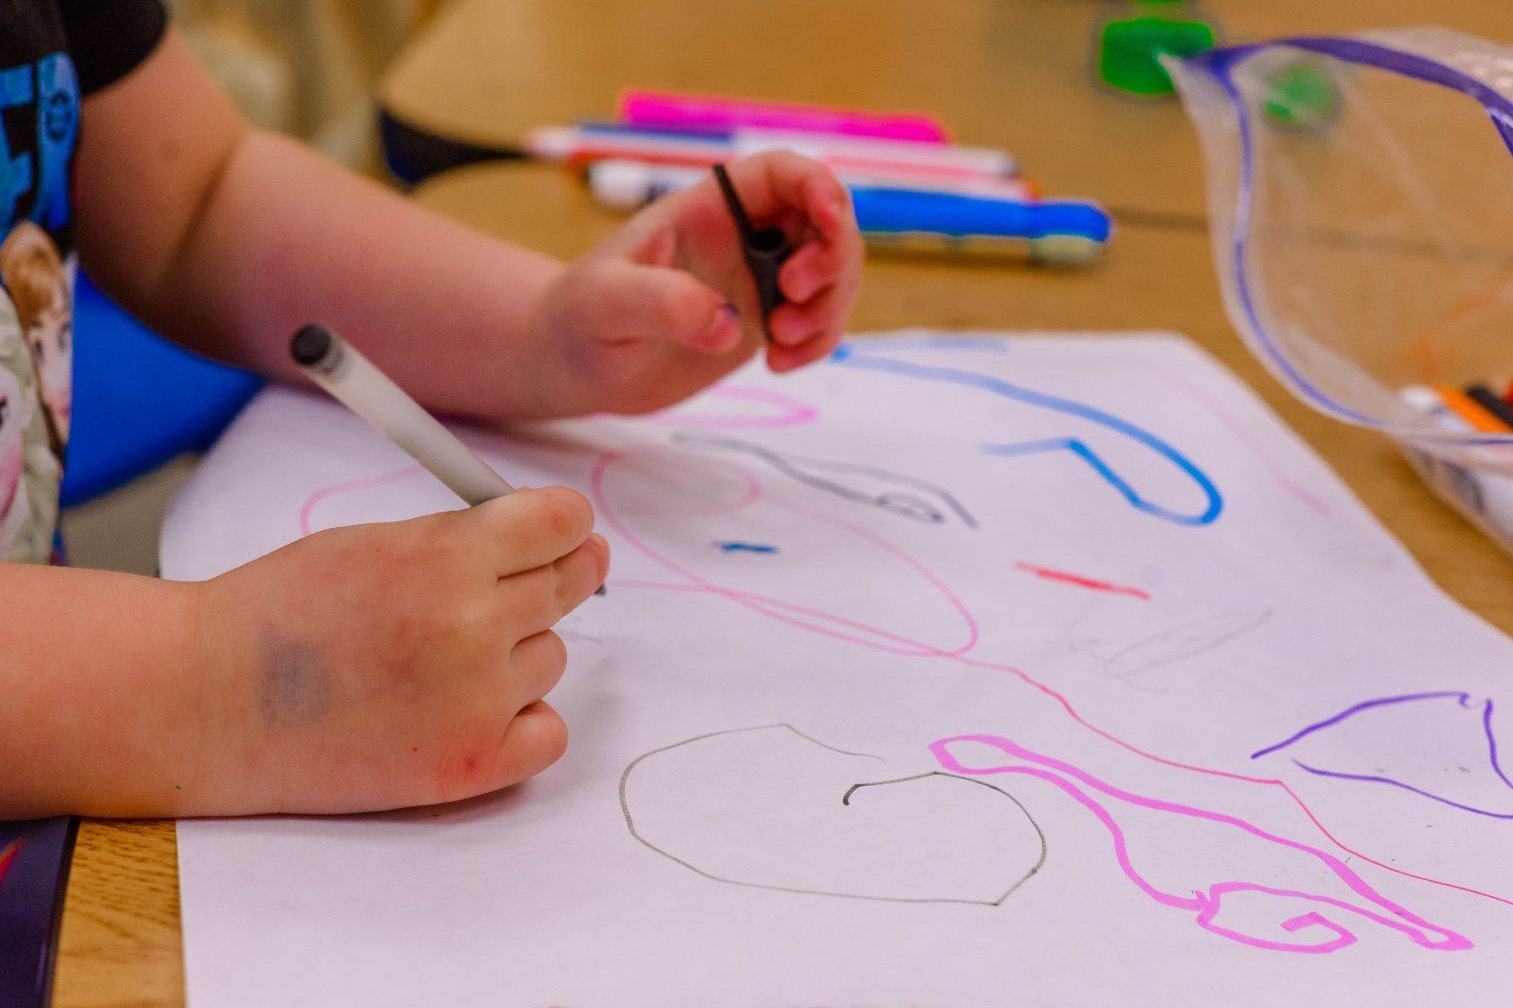 Die Hände eines kleinen Kindes malen ein buntes Bild